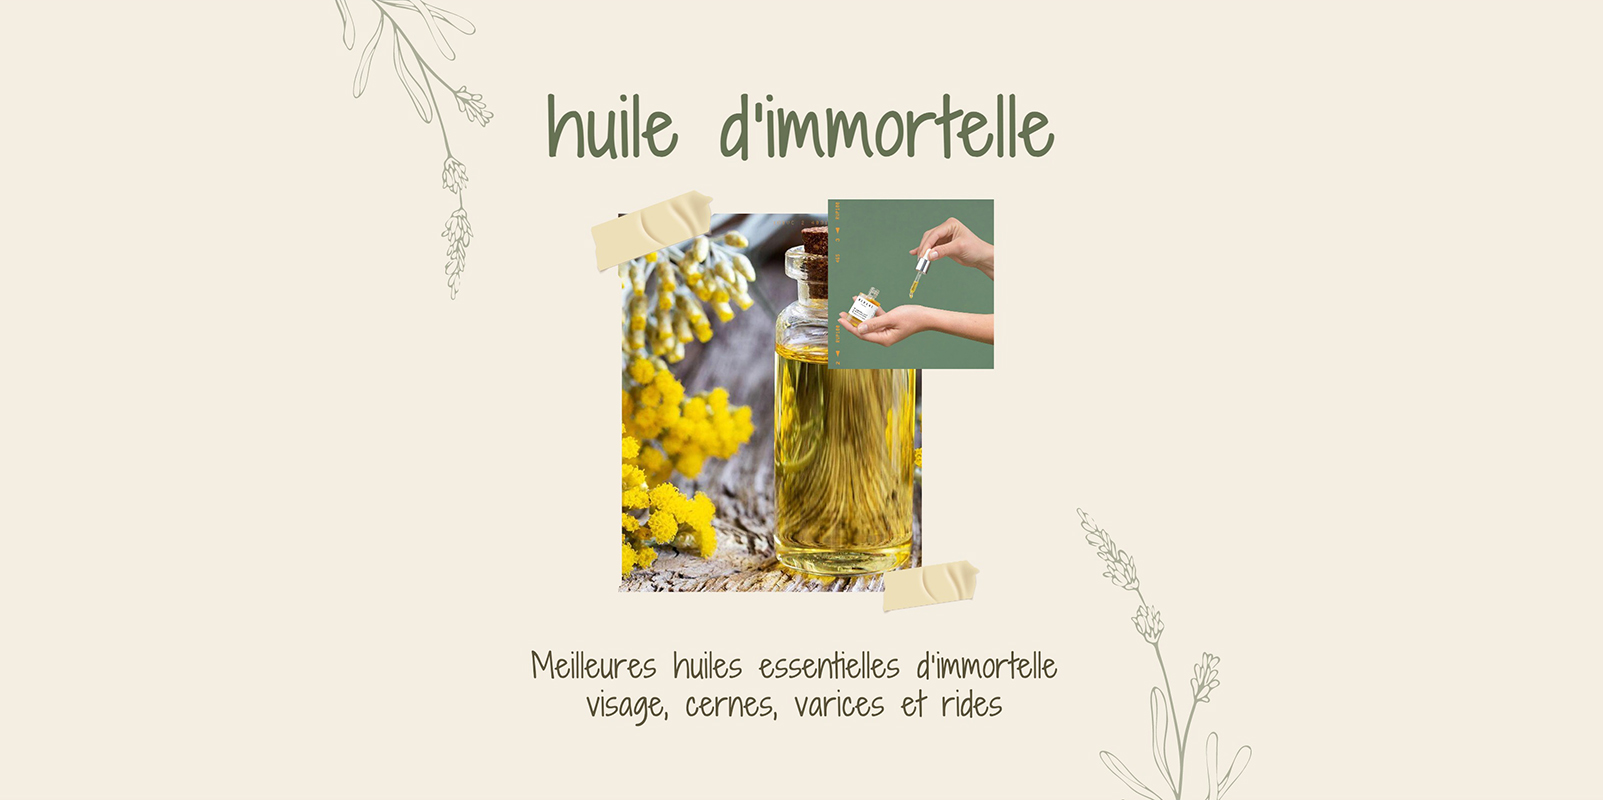 Italian Helichrysum: Akanyanya Immortelle Akakosha Mafuta eChiso, Rima Denderedzwa, Varicose Veins uye Wrinkles